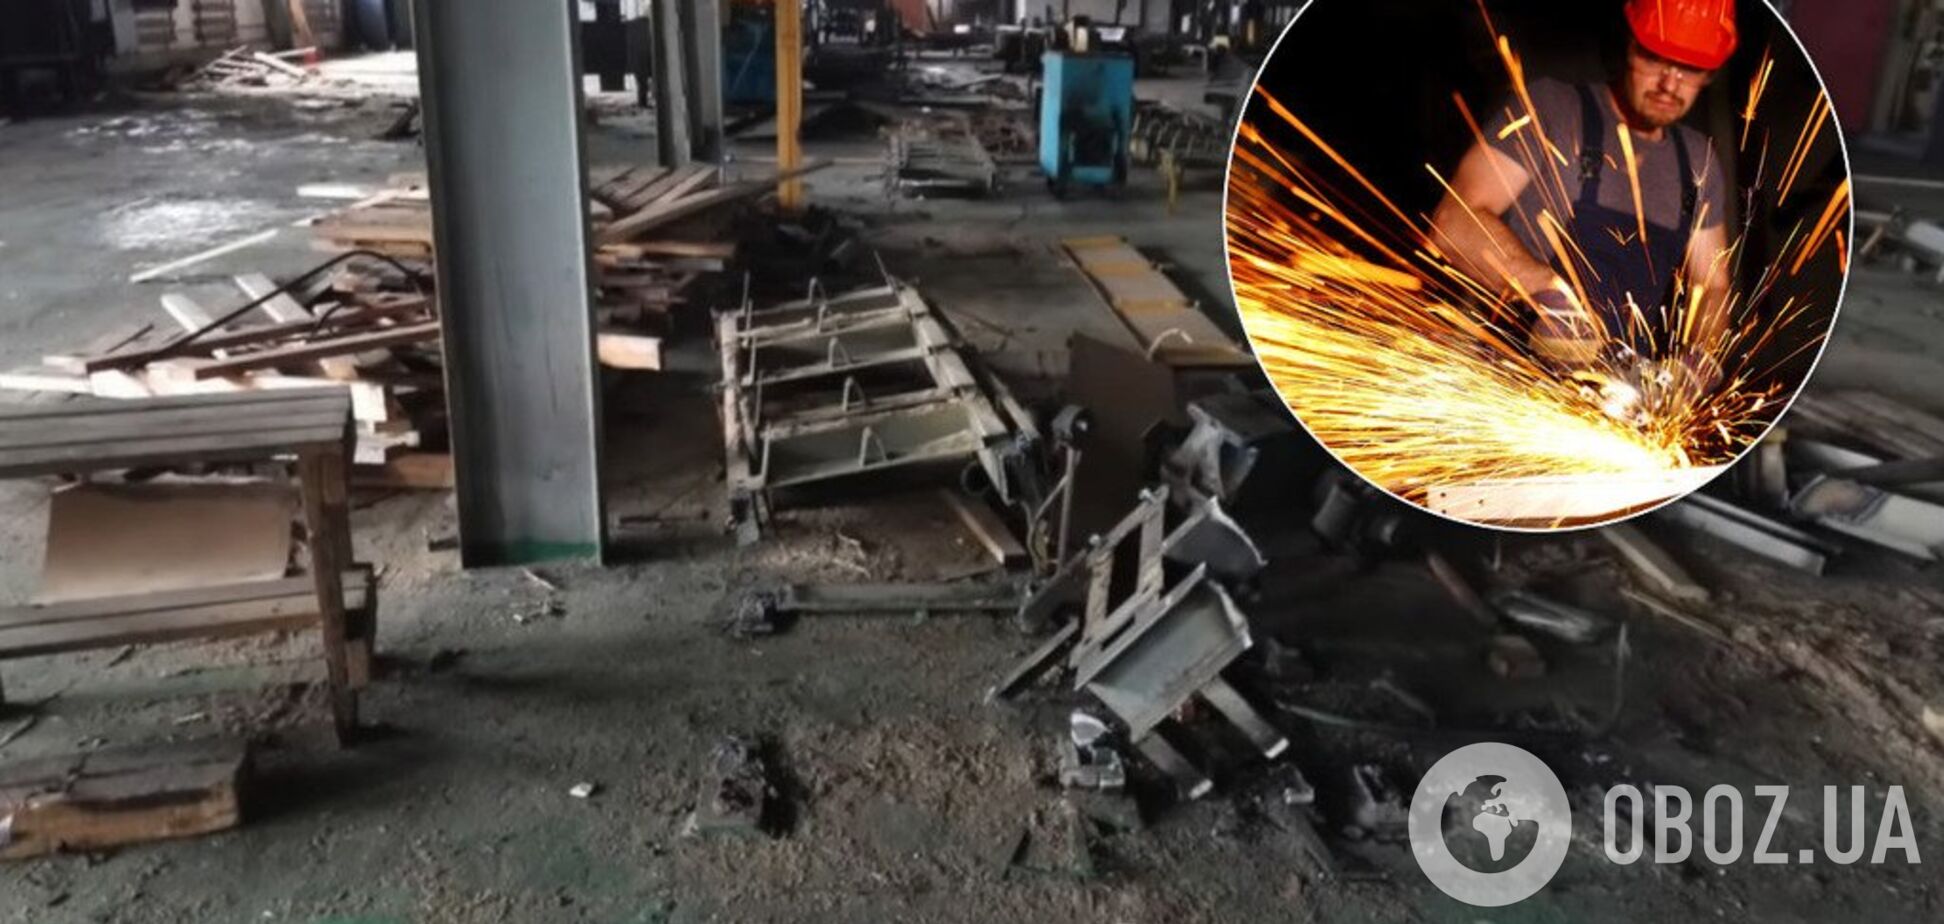 Распад, деградация и разруха: блогер показал руины завода на Донбассе